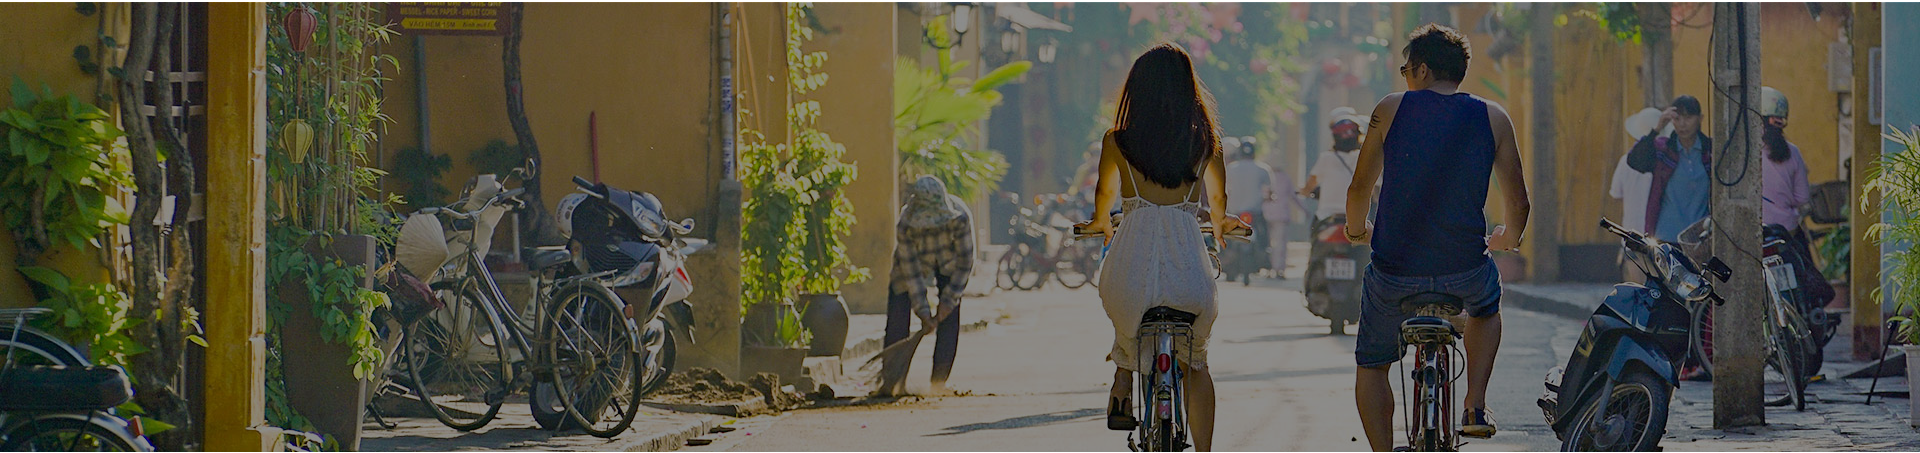 Cyclo – Vietnamese unique mean of transportation